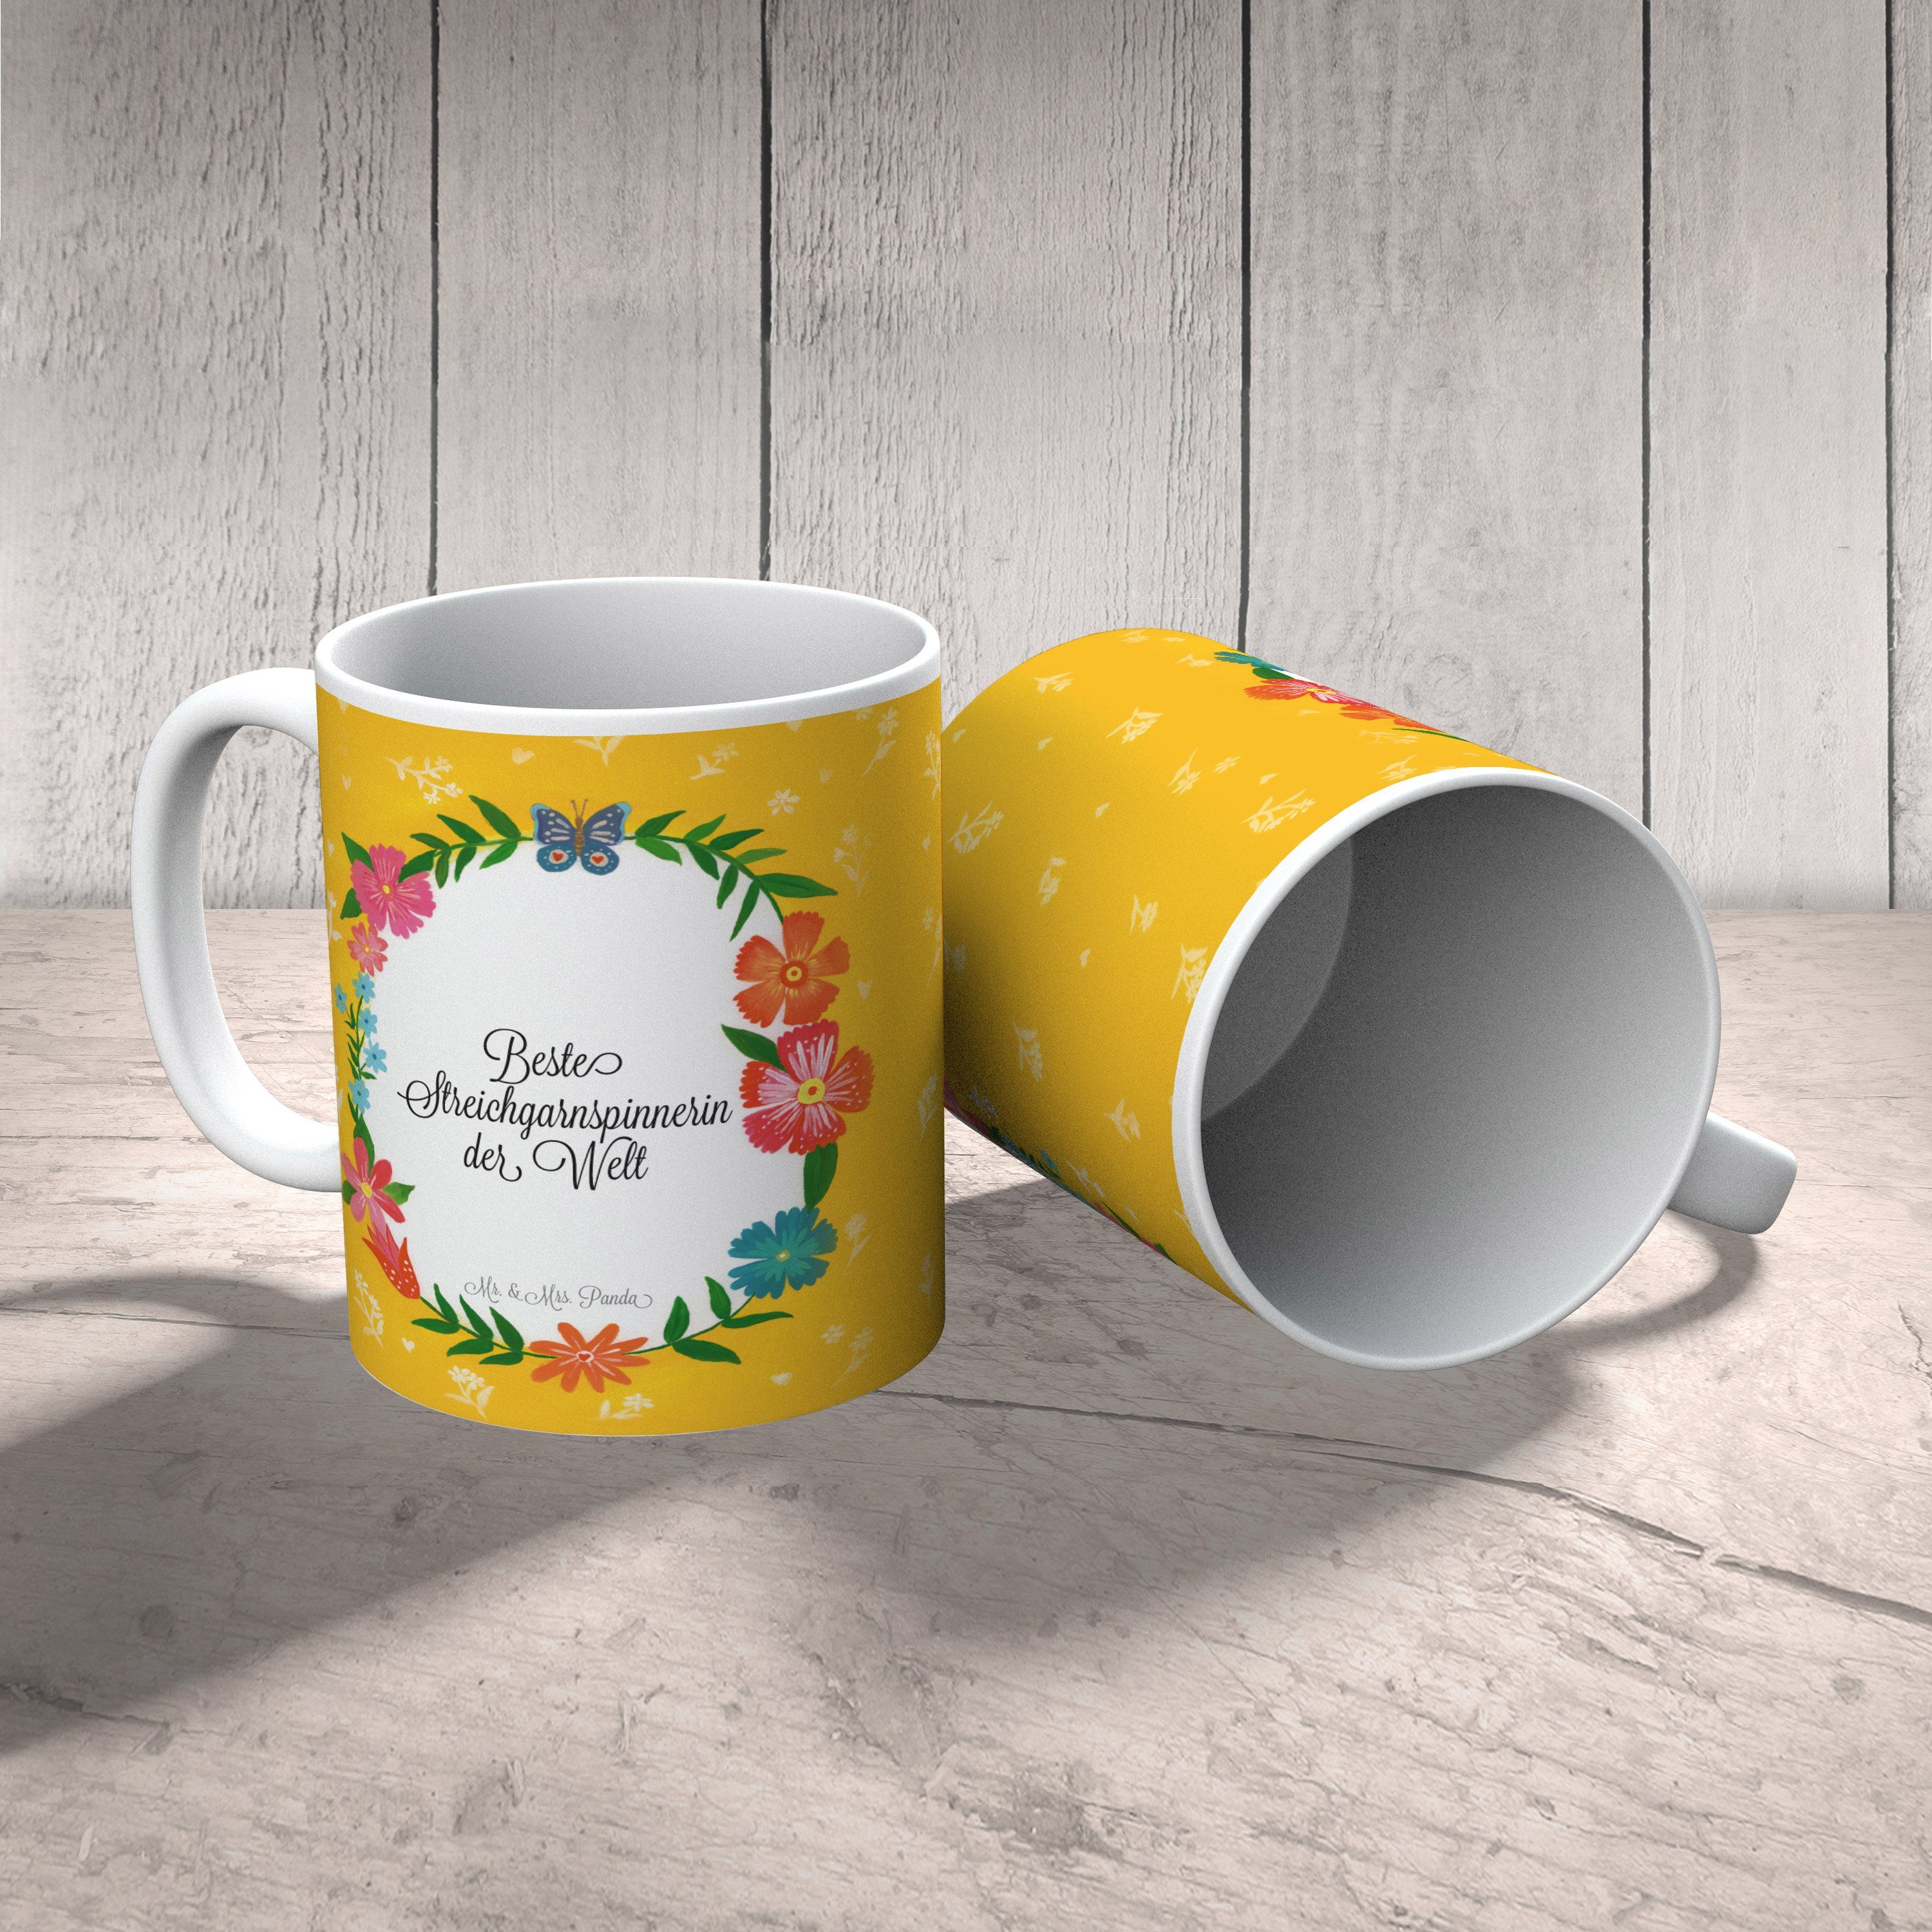 Mr. & Mrs. Panda Tasse Teetasse, - Schenken, Keramik Geschenk, Tasse, Streichgarnspinnerin Geschenk